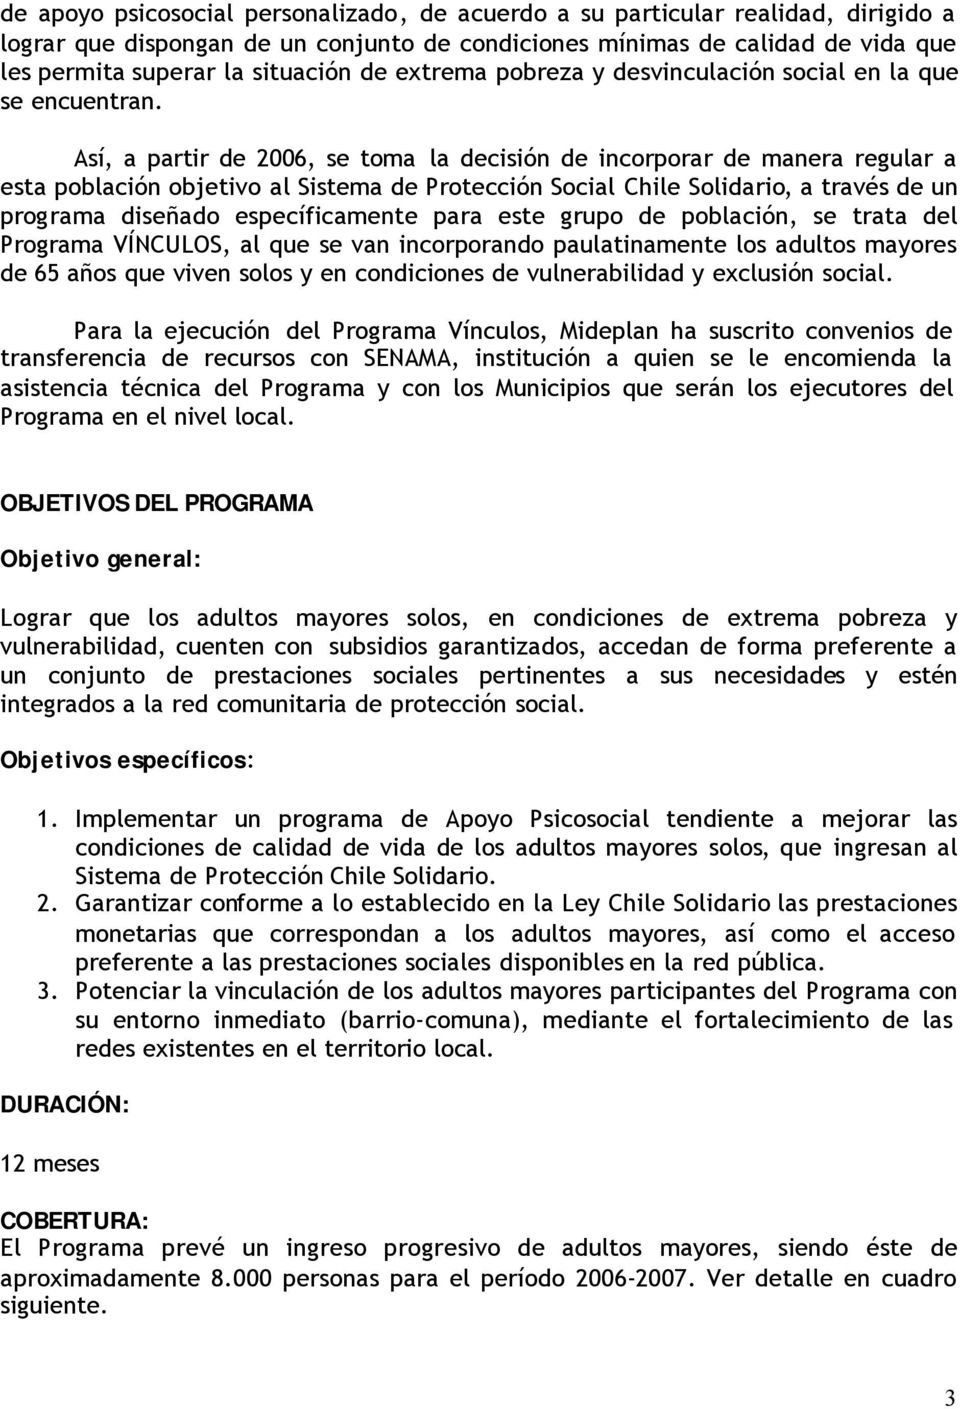 Así, a partir de 2006, se toma la decisión de incorporar de manera regular a esta población objetivo al Sistema de Protección Social Chile Solidario, a través de un programa diseñado específicamente